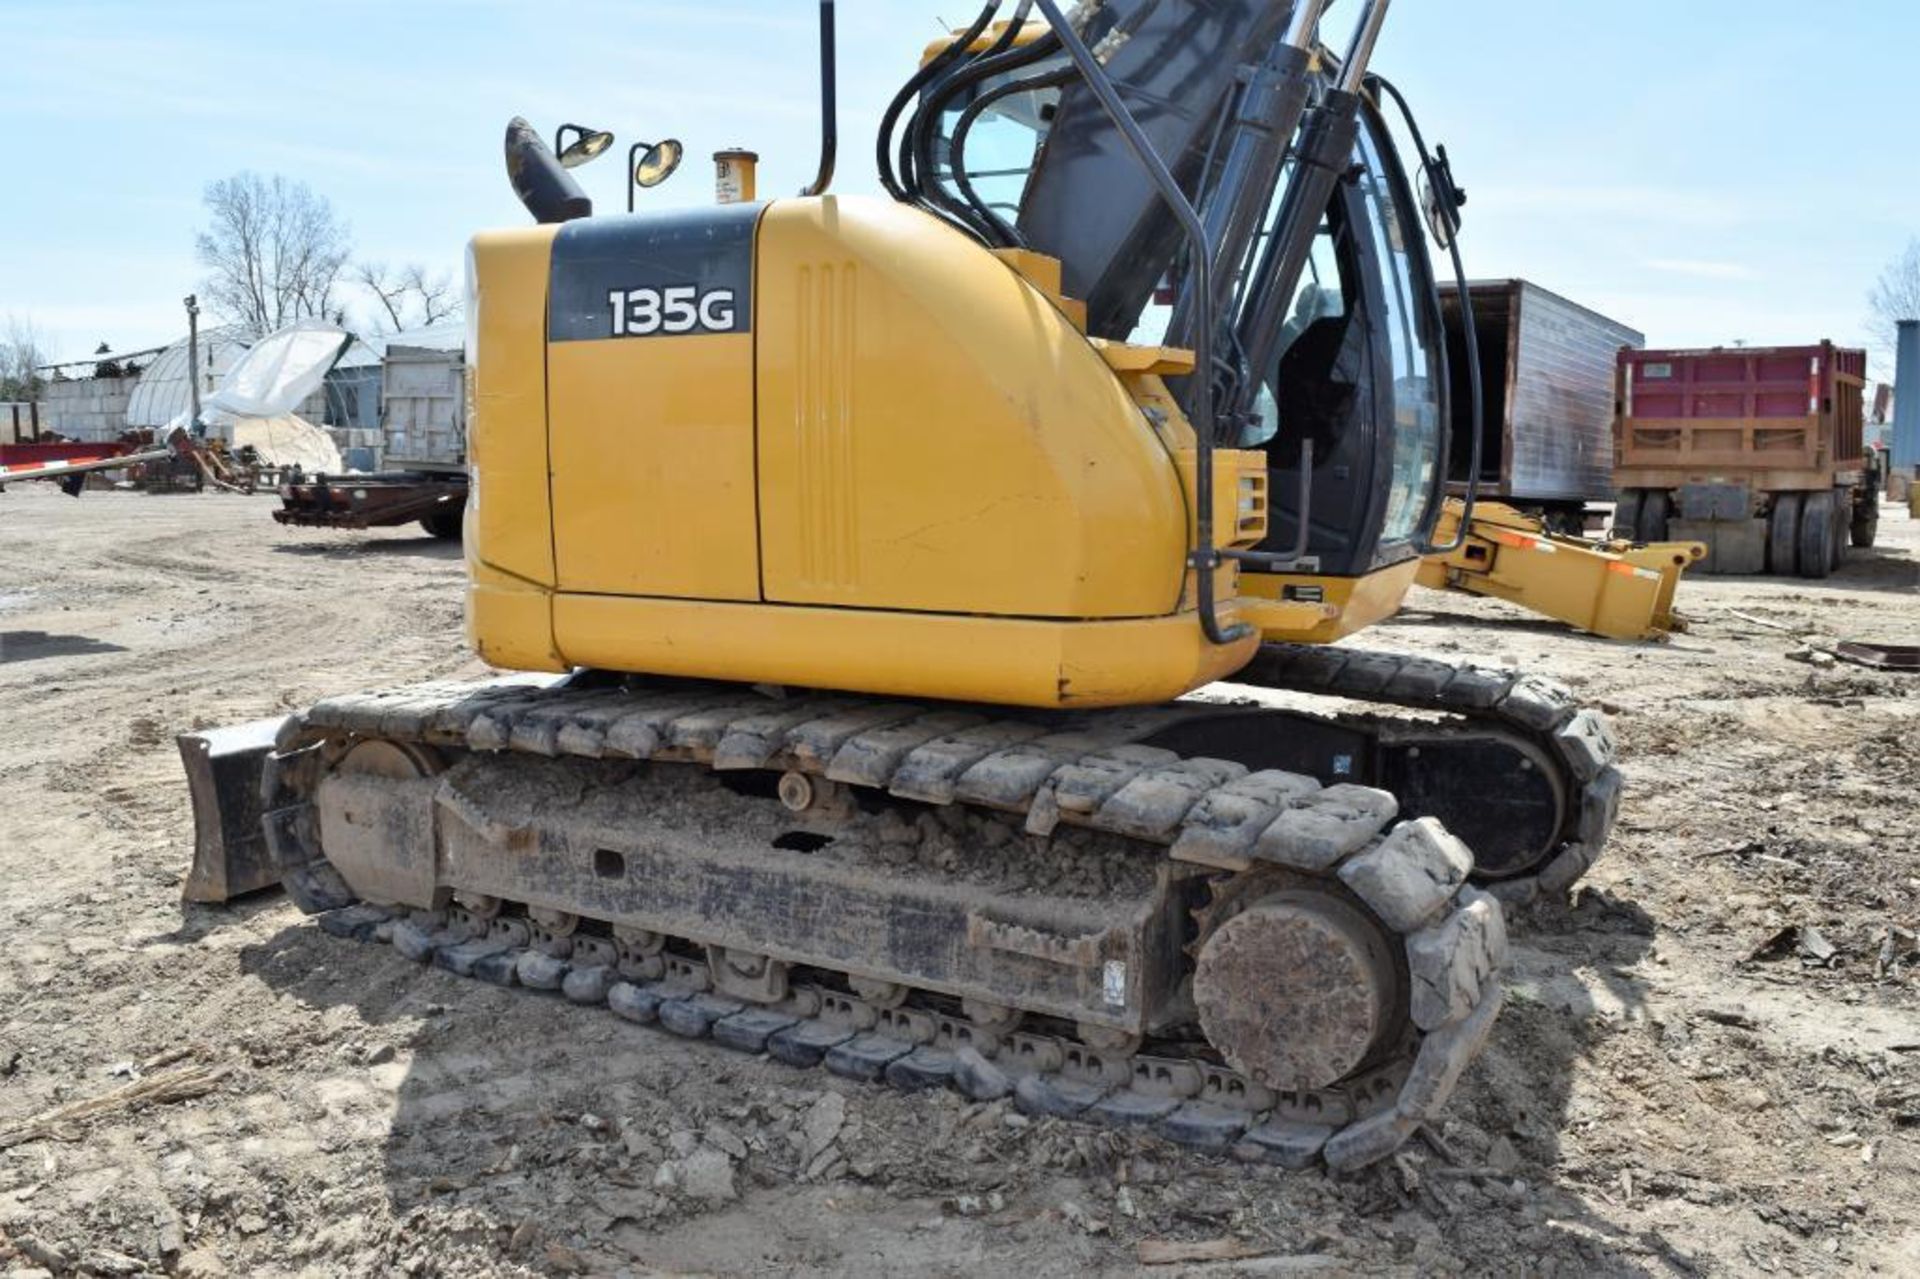 John Deere Model 135G Hydraulic Excavator S/N: 1FF135GXAEE400830 (2015) 1-24" Q/C Digging Bucket, 1- - Image 10 of 62